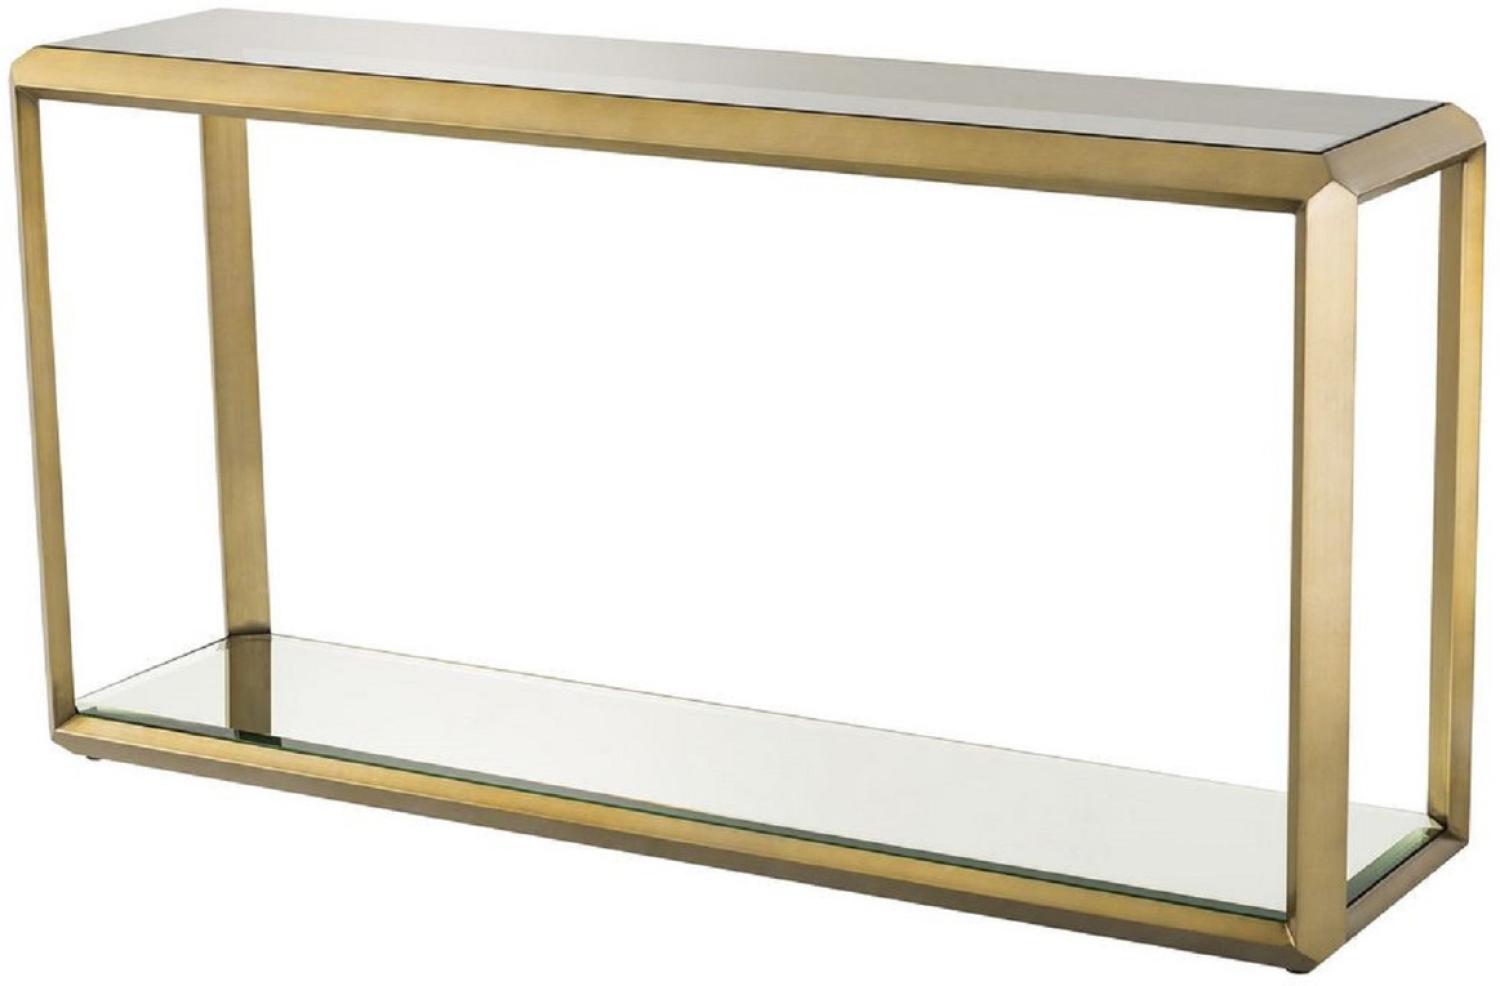 Casa Padrino Luxus Konsole Messingfarben / Schwarz 150 x 40 x H. 78 cm - Edelstahl Konsolentisch mit Glasplatte und Spiegelglas - Luxus Wohnzimmer Möbel Bild 1